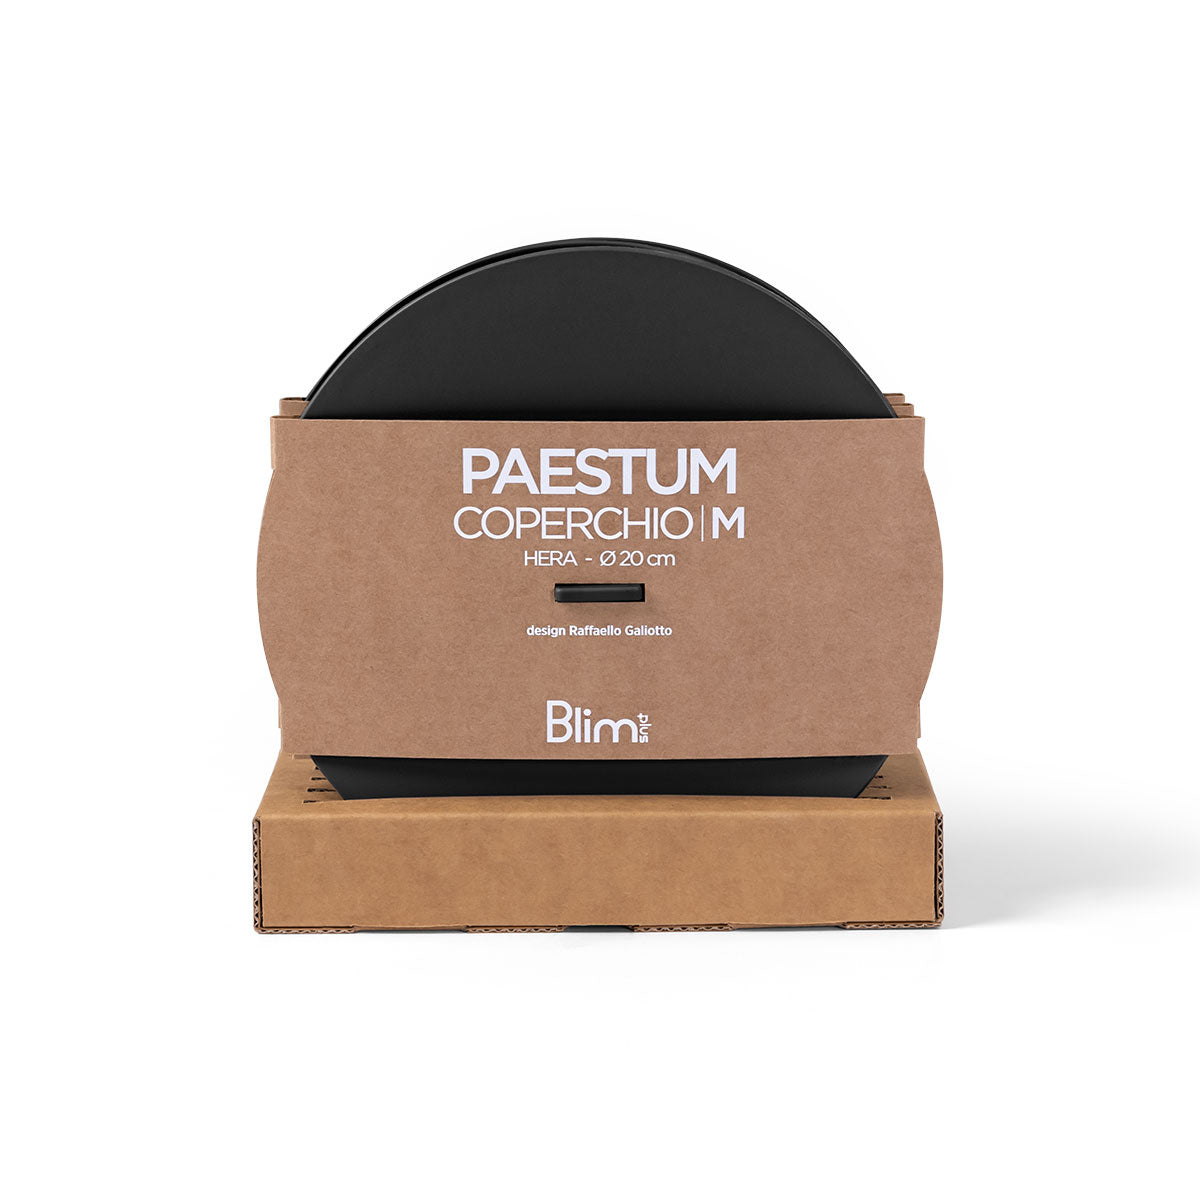 BLIM PLUS Coperchio per Ciotola Paestum M 20cm Carbon Black Nero Made in Italy 100% Riciclabile